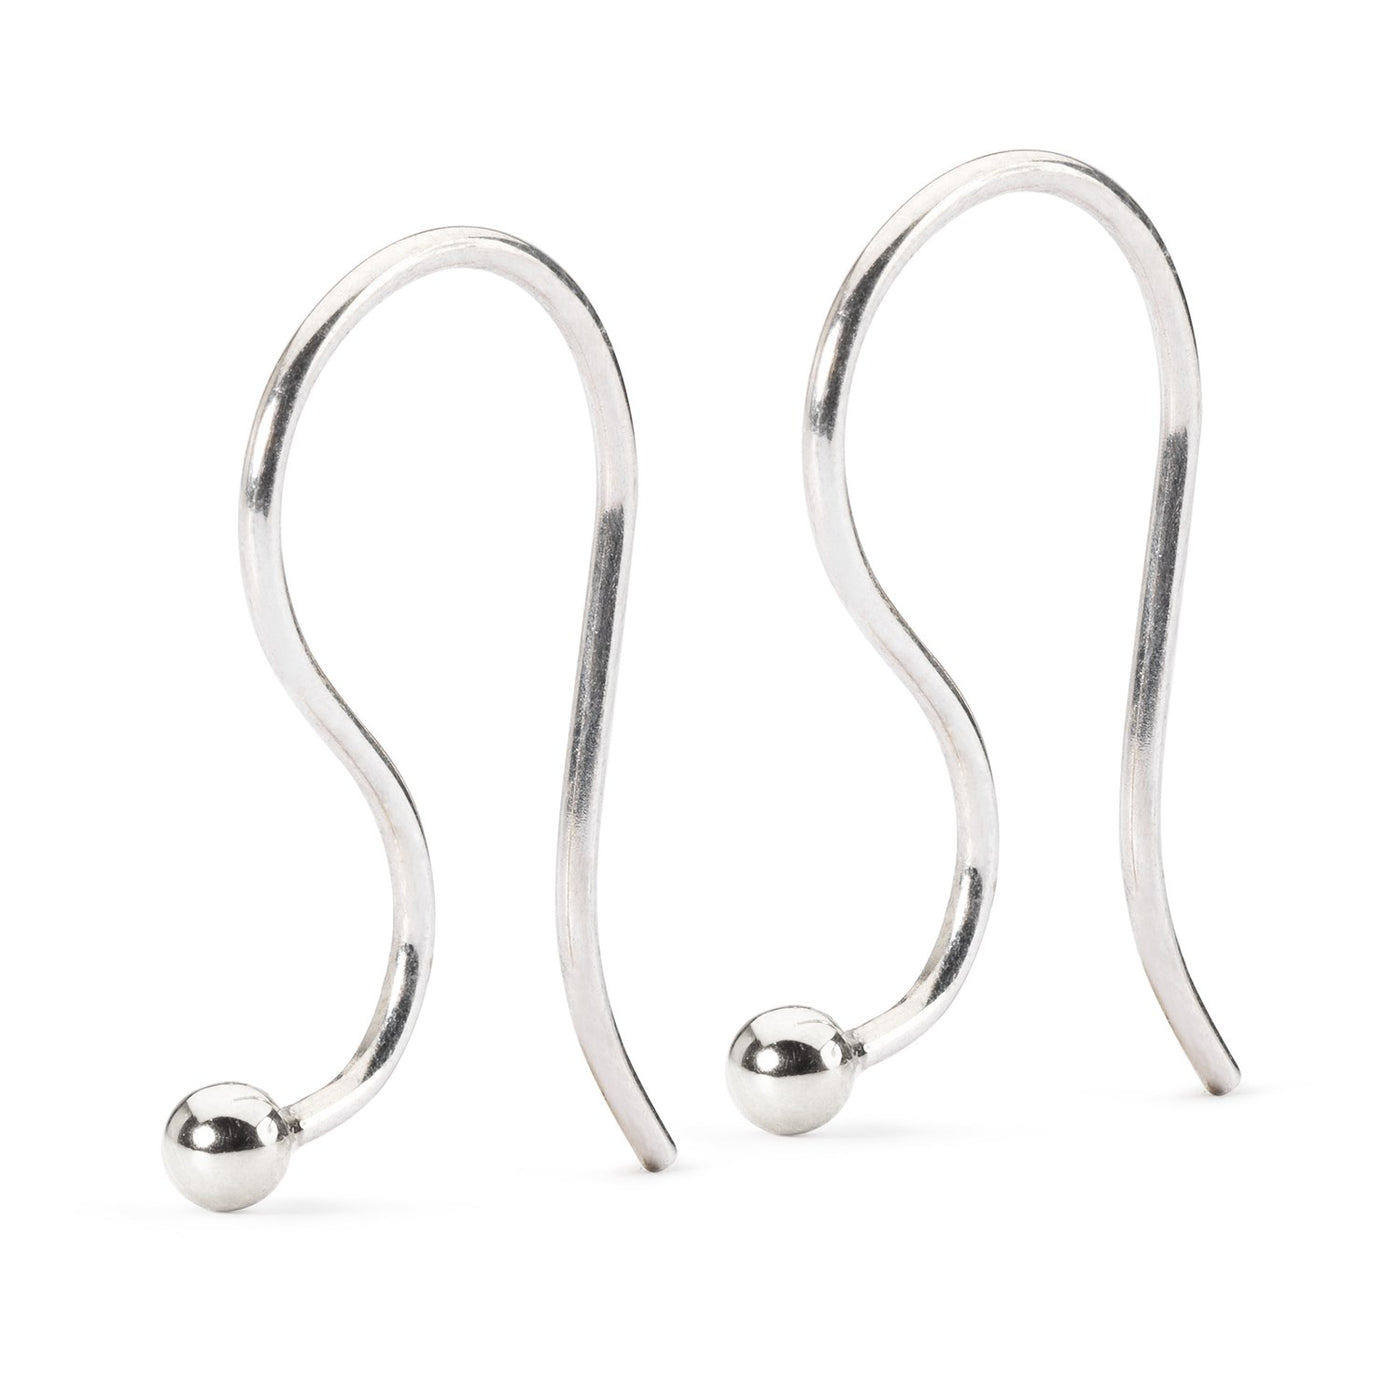 Amethyst Earrings with Silver Earring Hooks